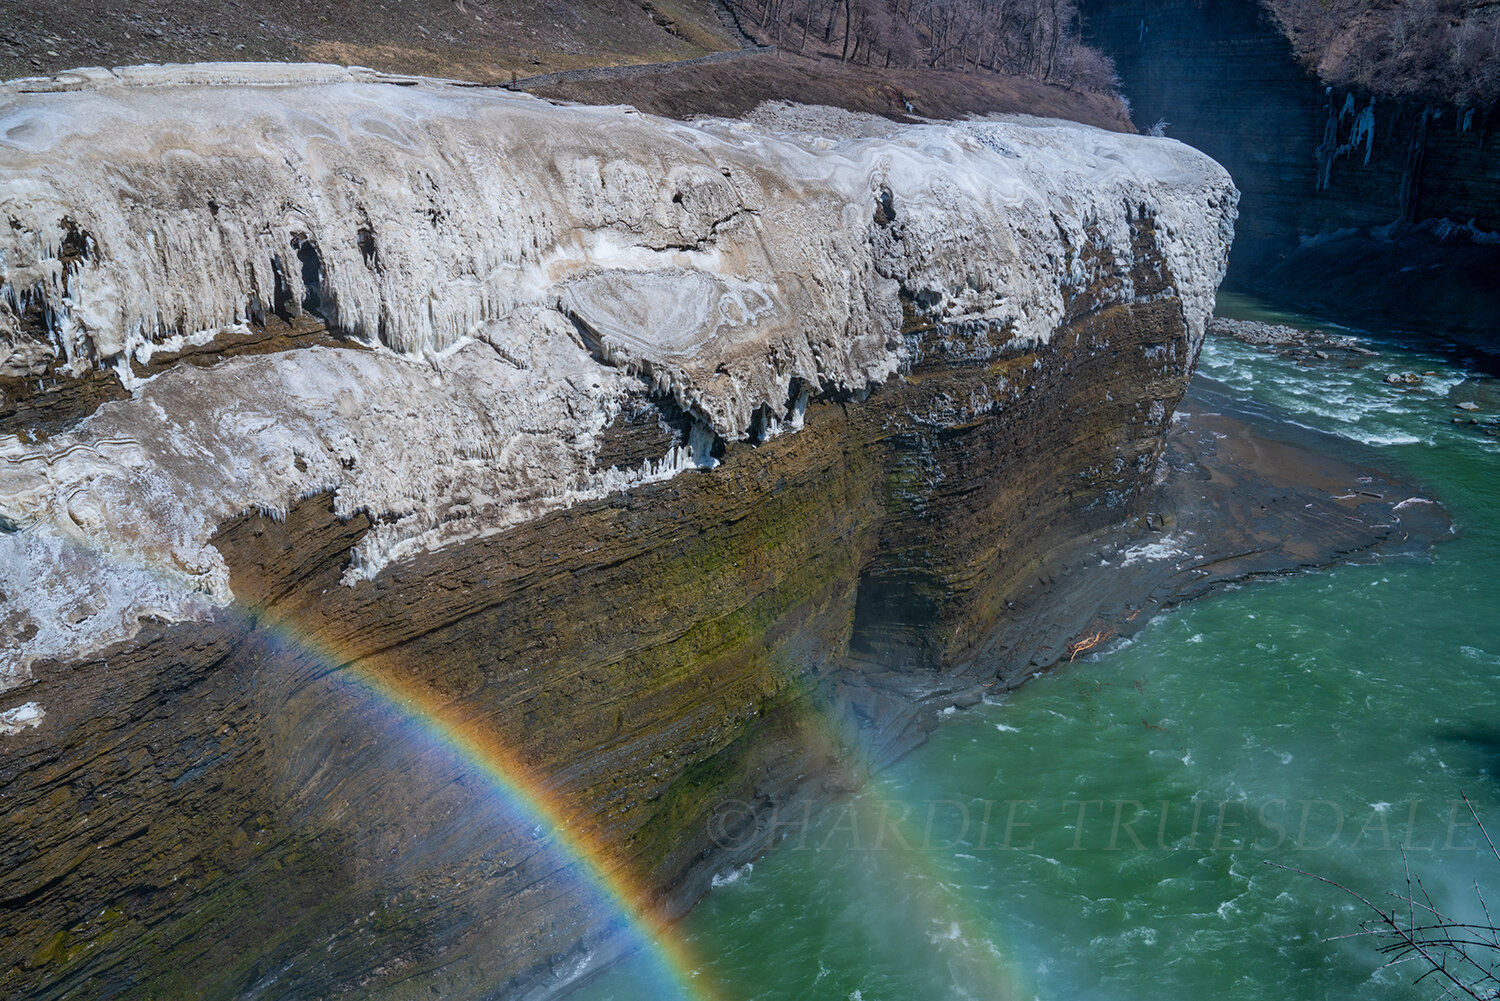 WNY#078 Icy Rainbow, Letchworth State Park, NY